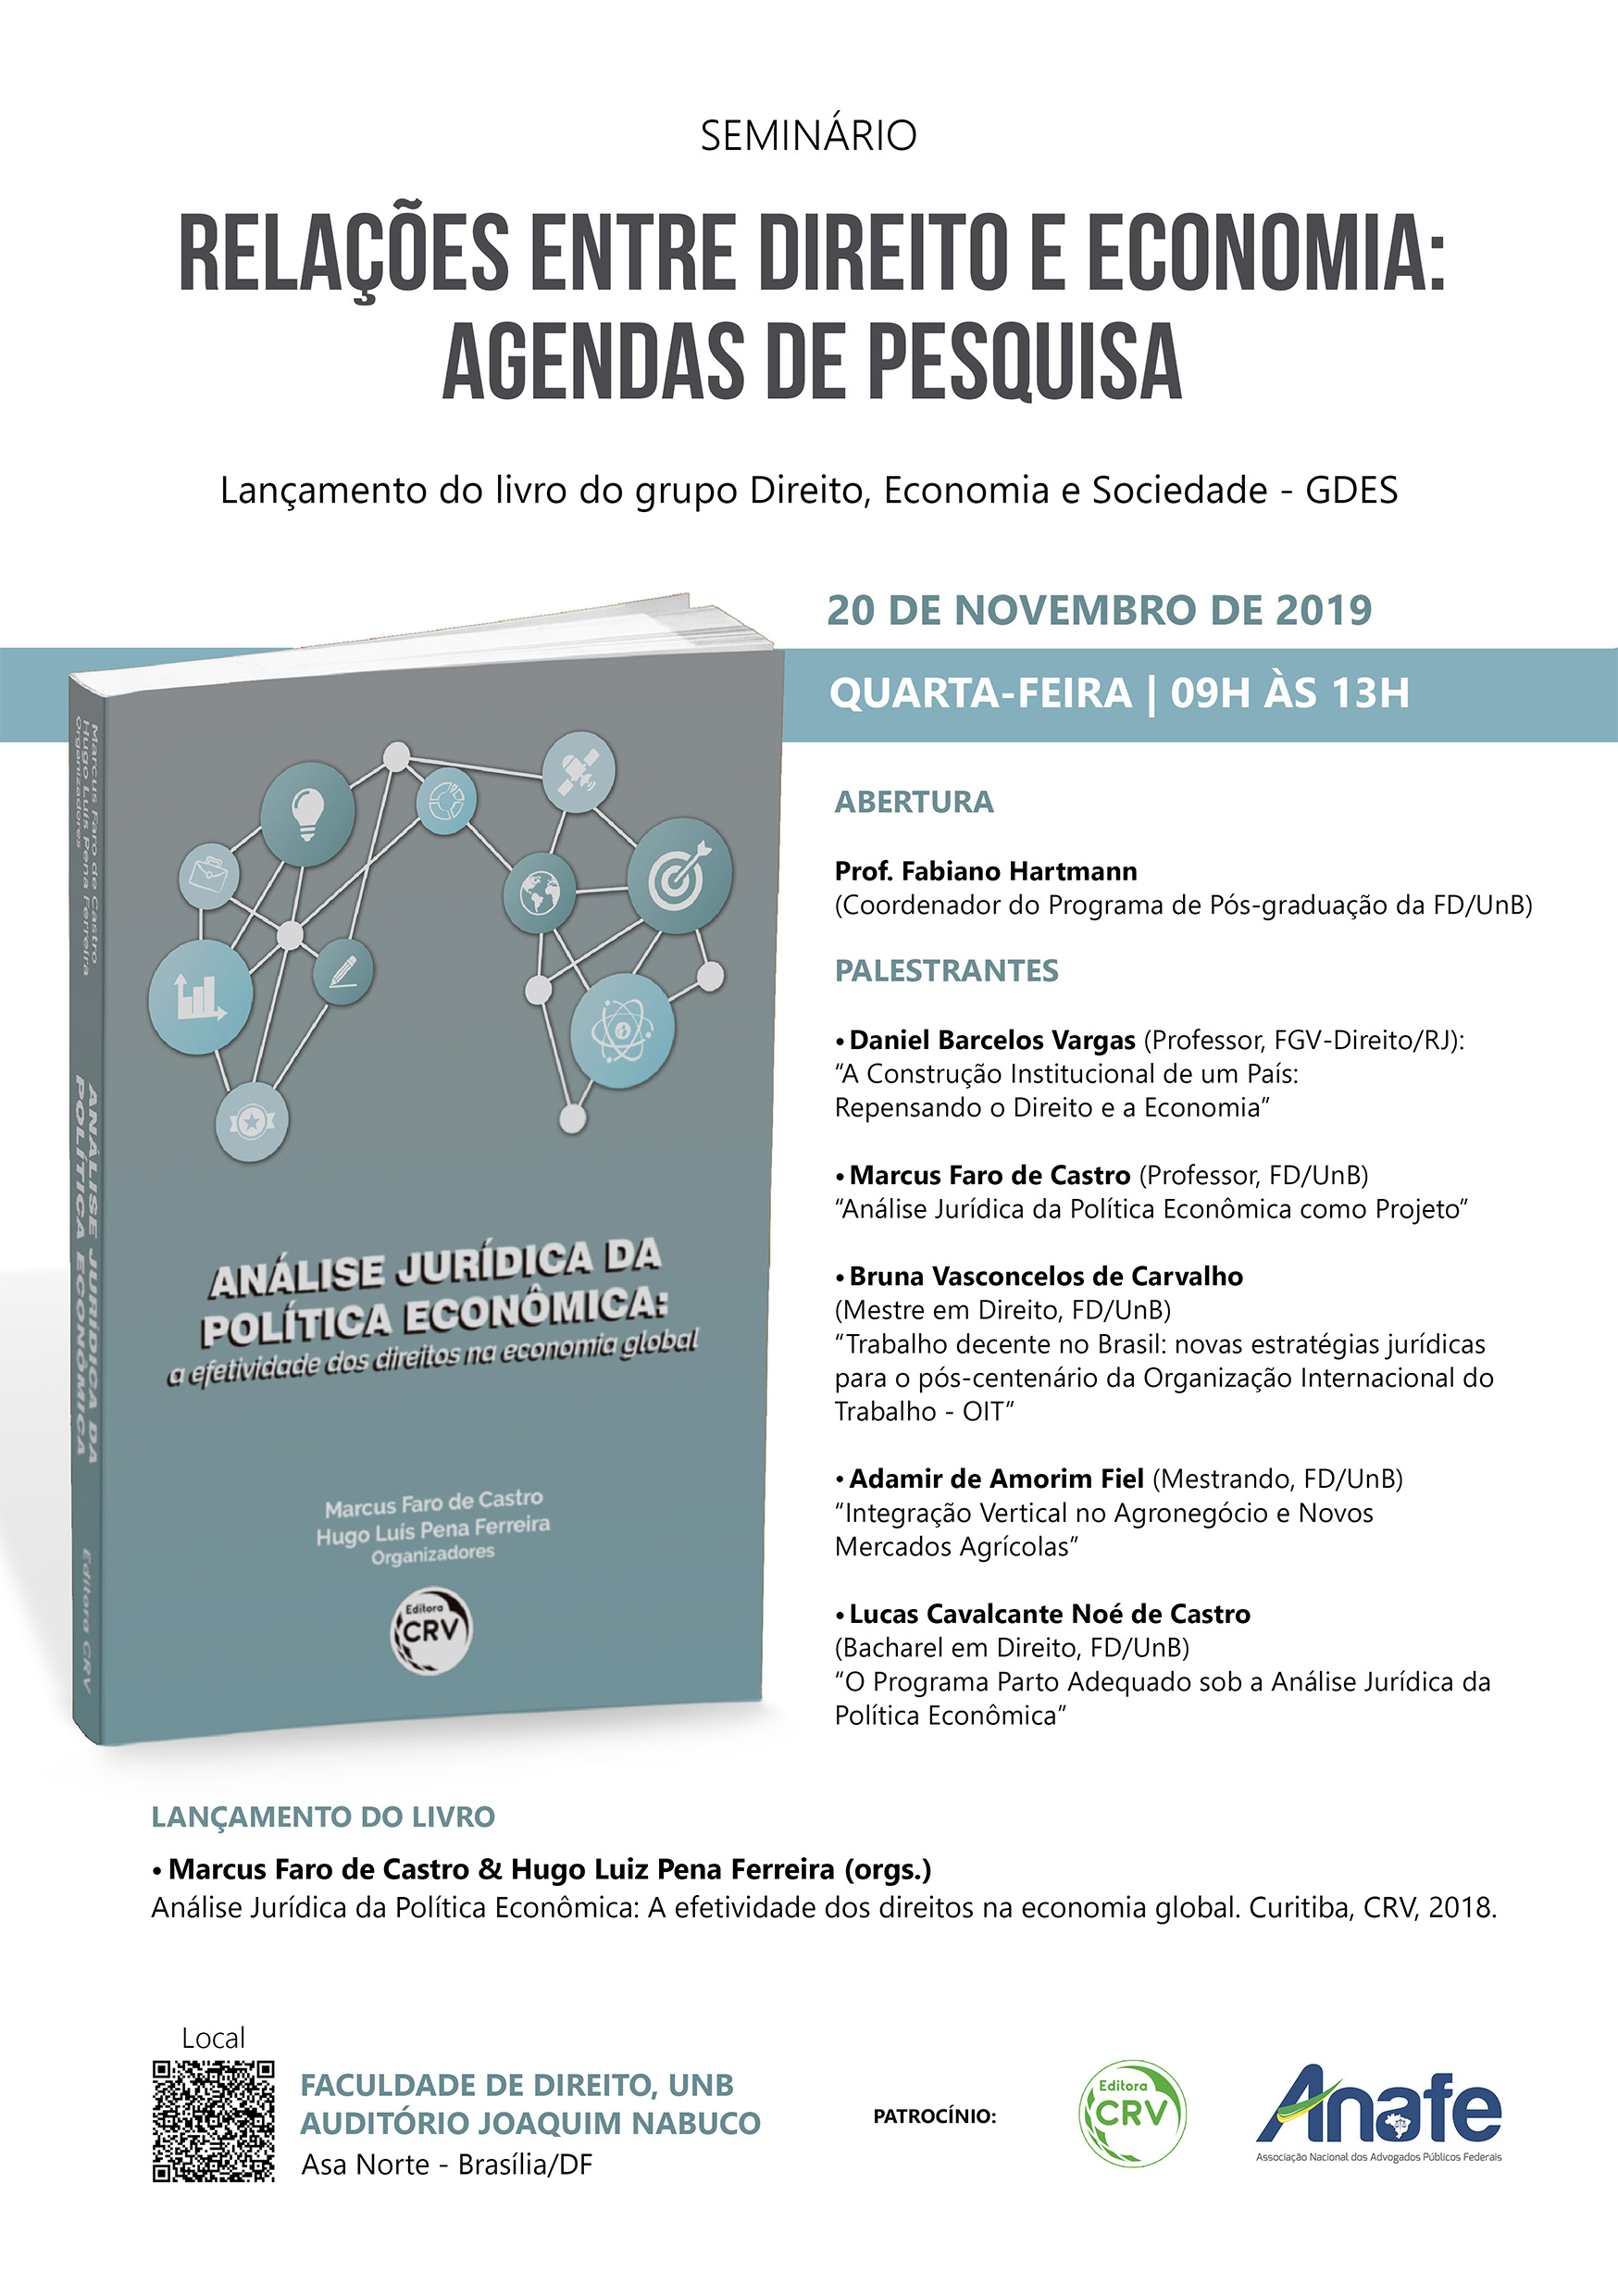 ANAFE apoia seminário e lançamento de livro sobre Direito e Economia na Universidade de Brasília